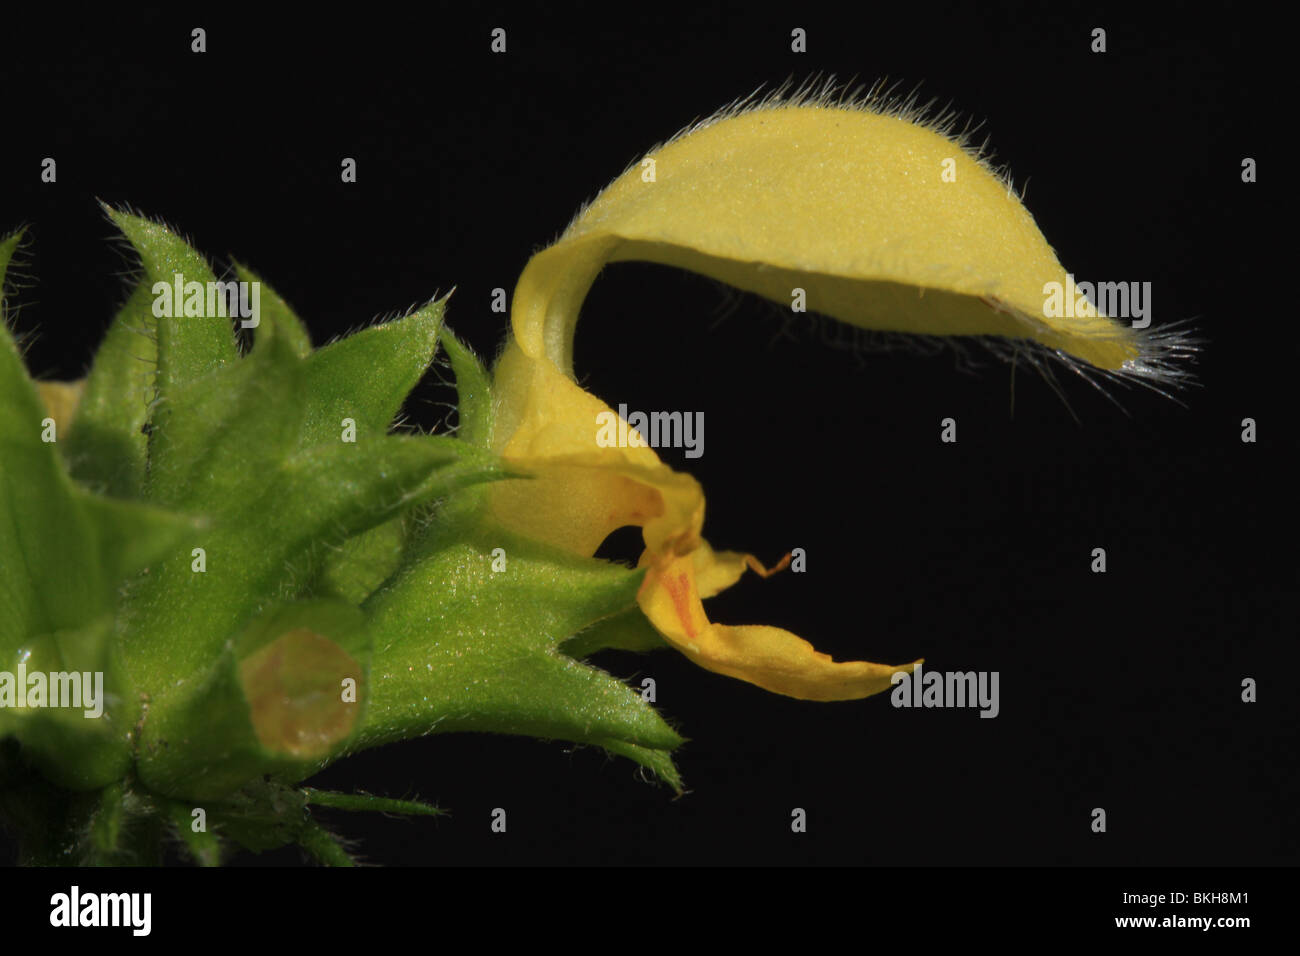 Dettaglio van een bloem van Gele Dovenetel Foto Stock